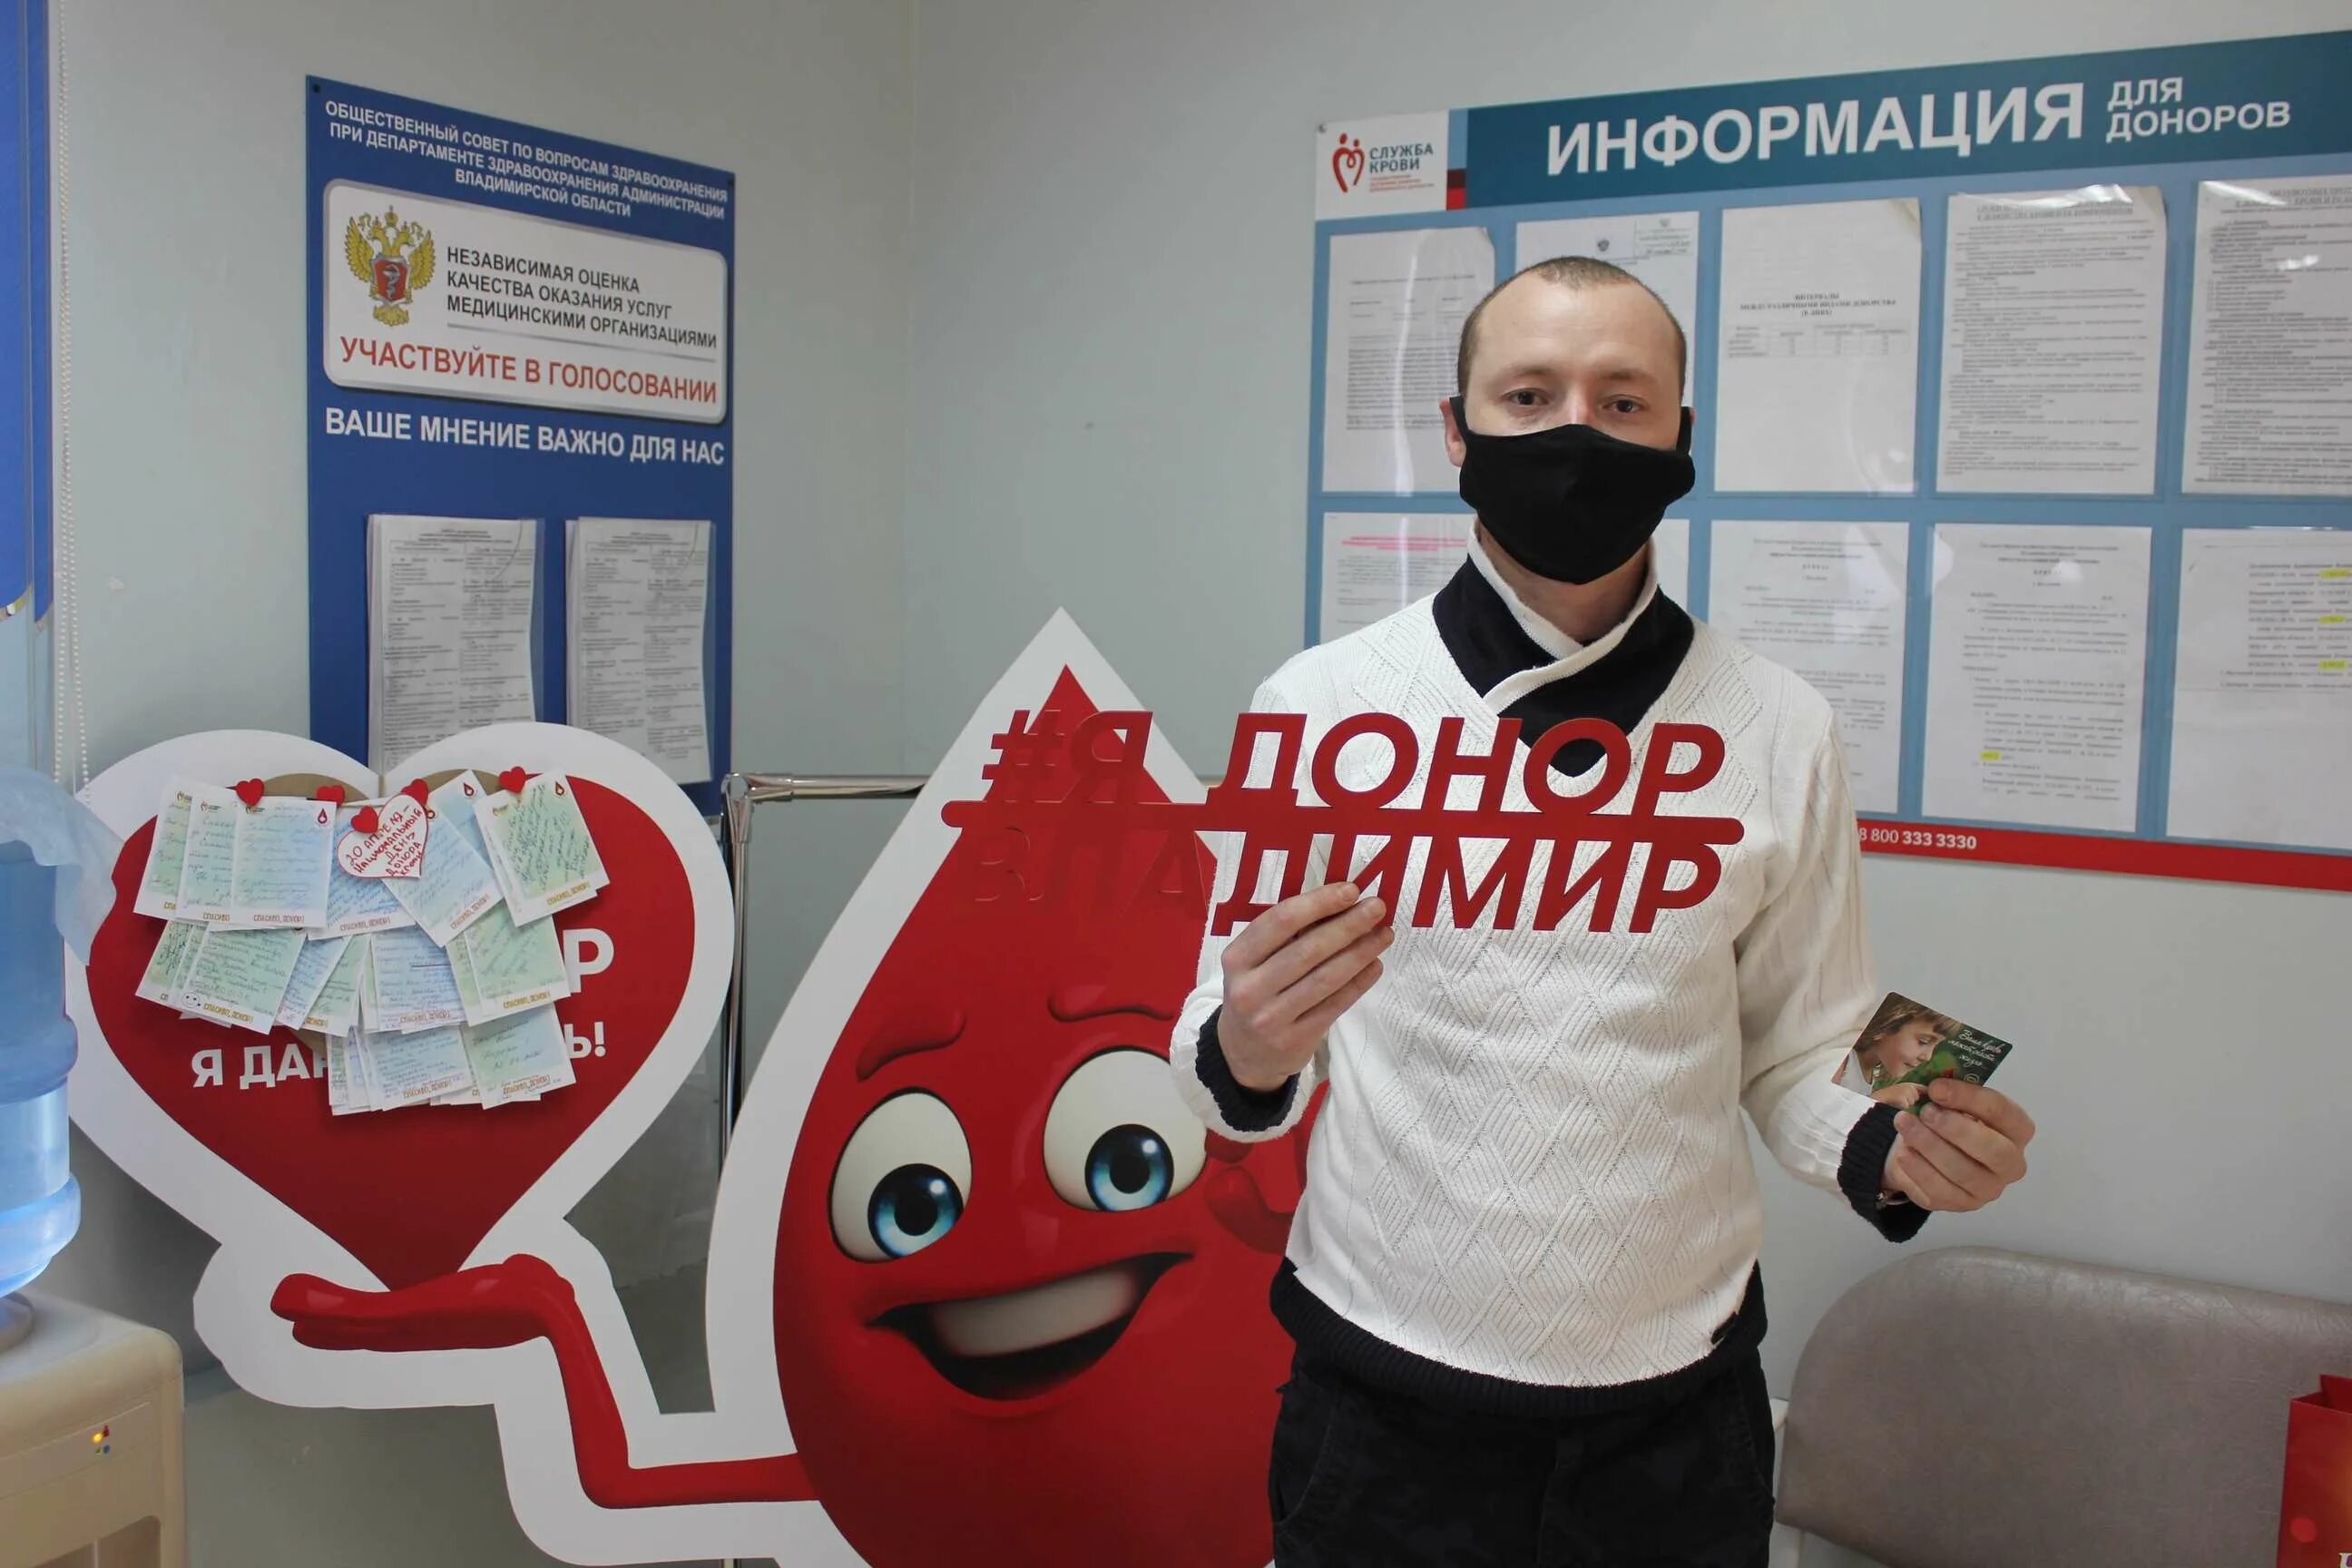 Донор служба крови. 20 Апреля день донора. Национальный день донора в России. Служба крови России.